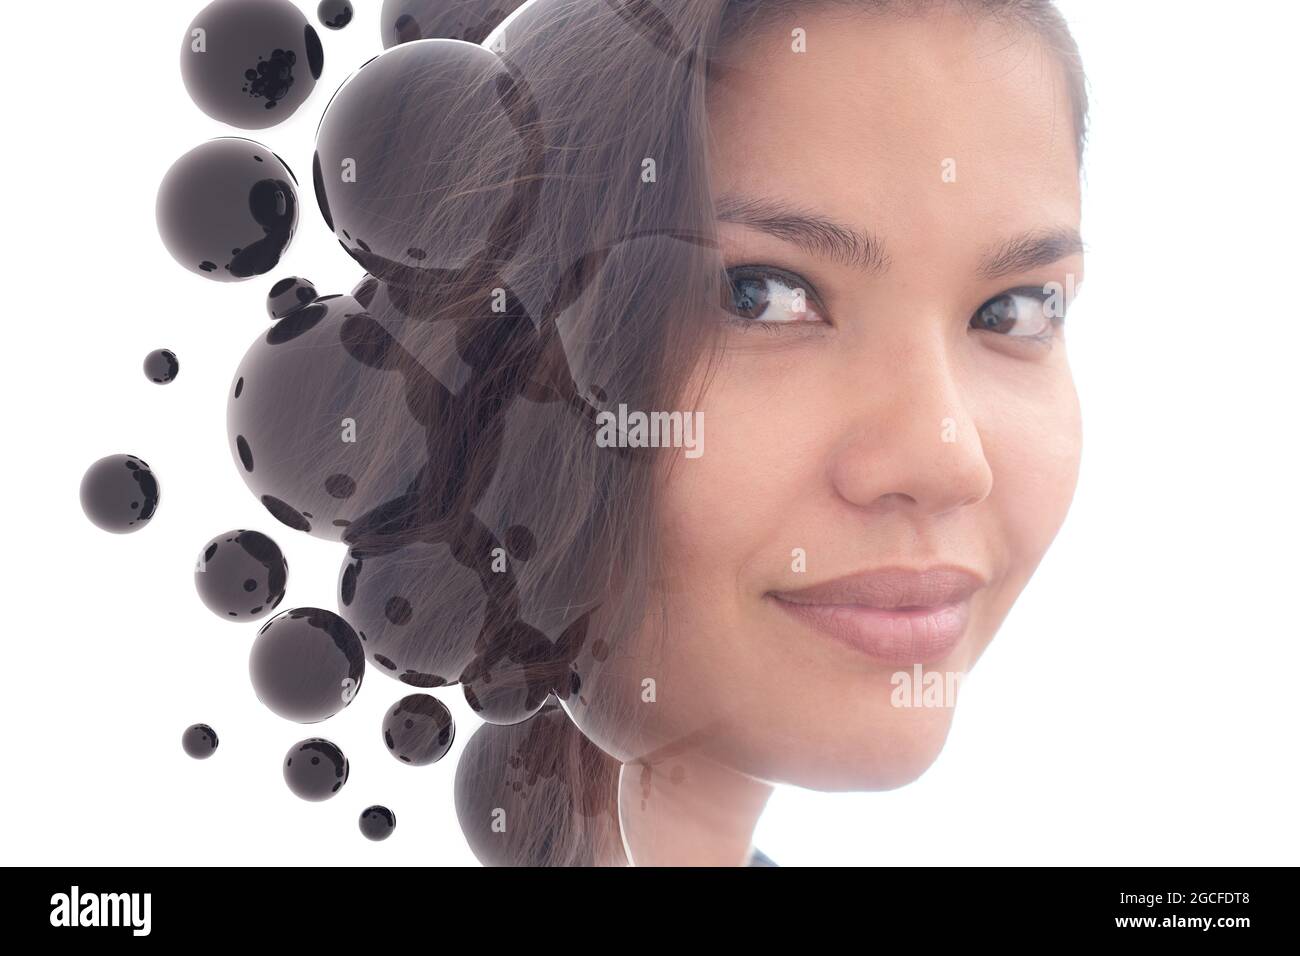 Doppelbelichtung Porträt von attraktiven asiatischen Frau Stockfoto